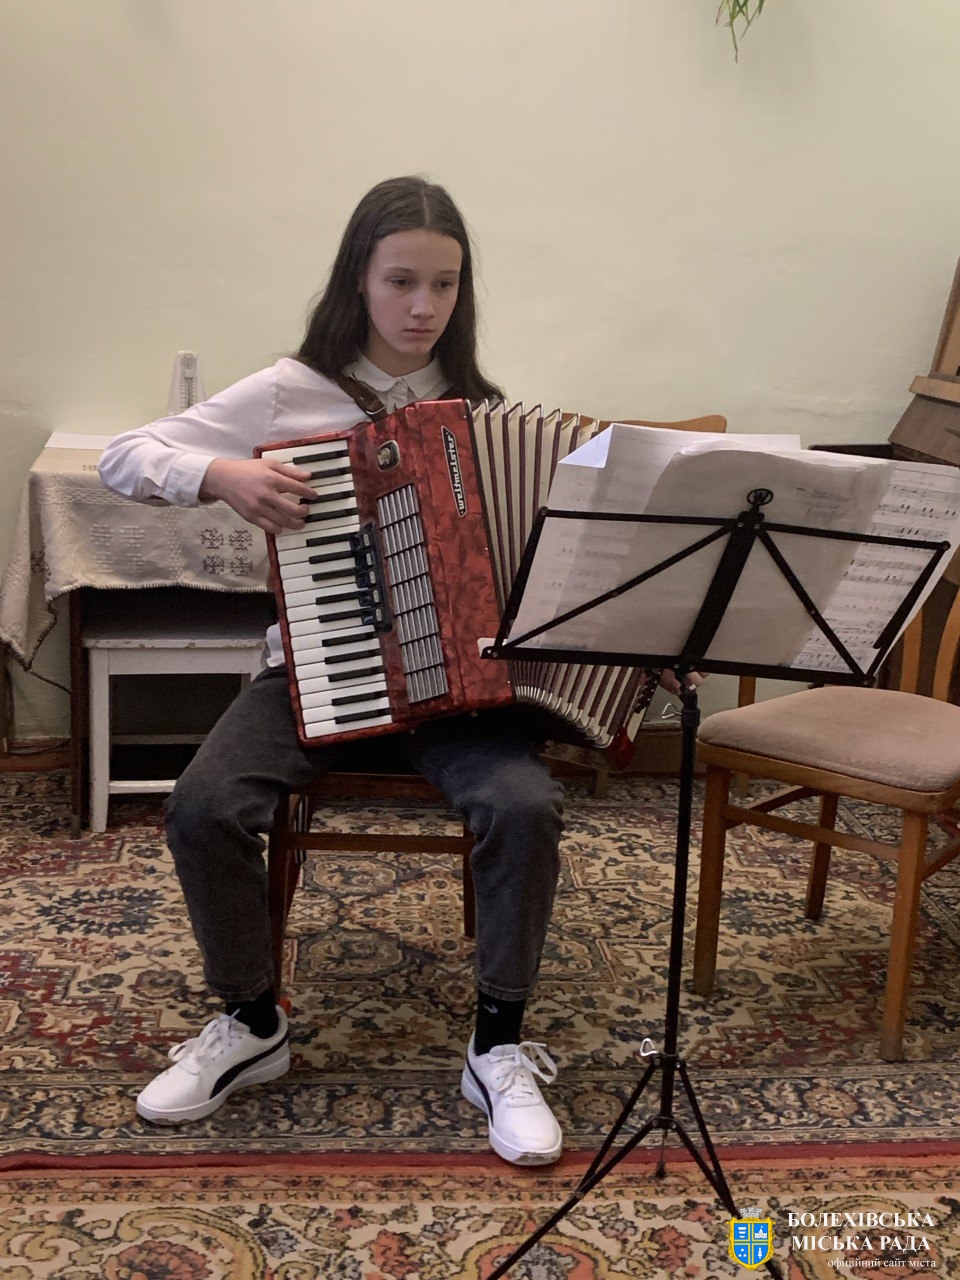 14 березня у Болехівській мистецькій школі відбувся відкритий урок по класу акордеона